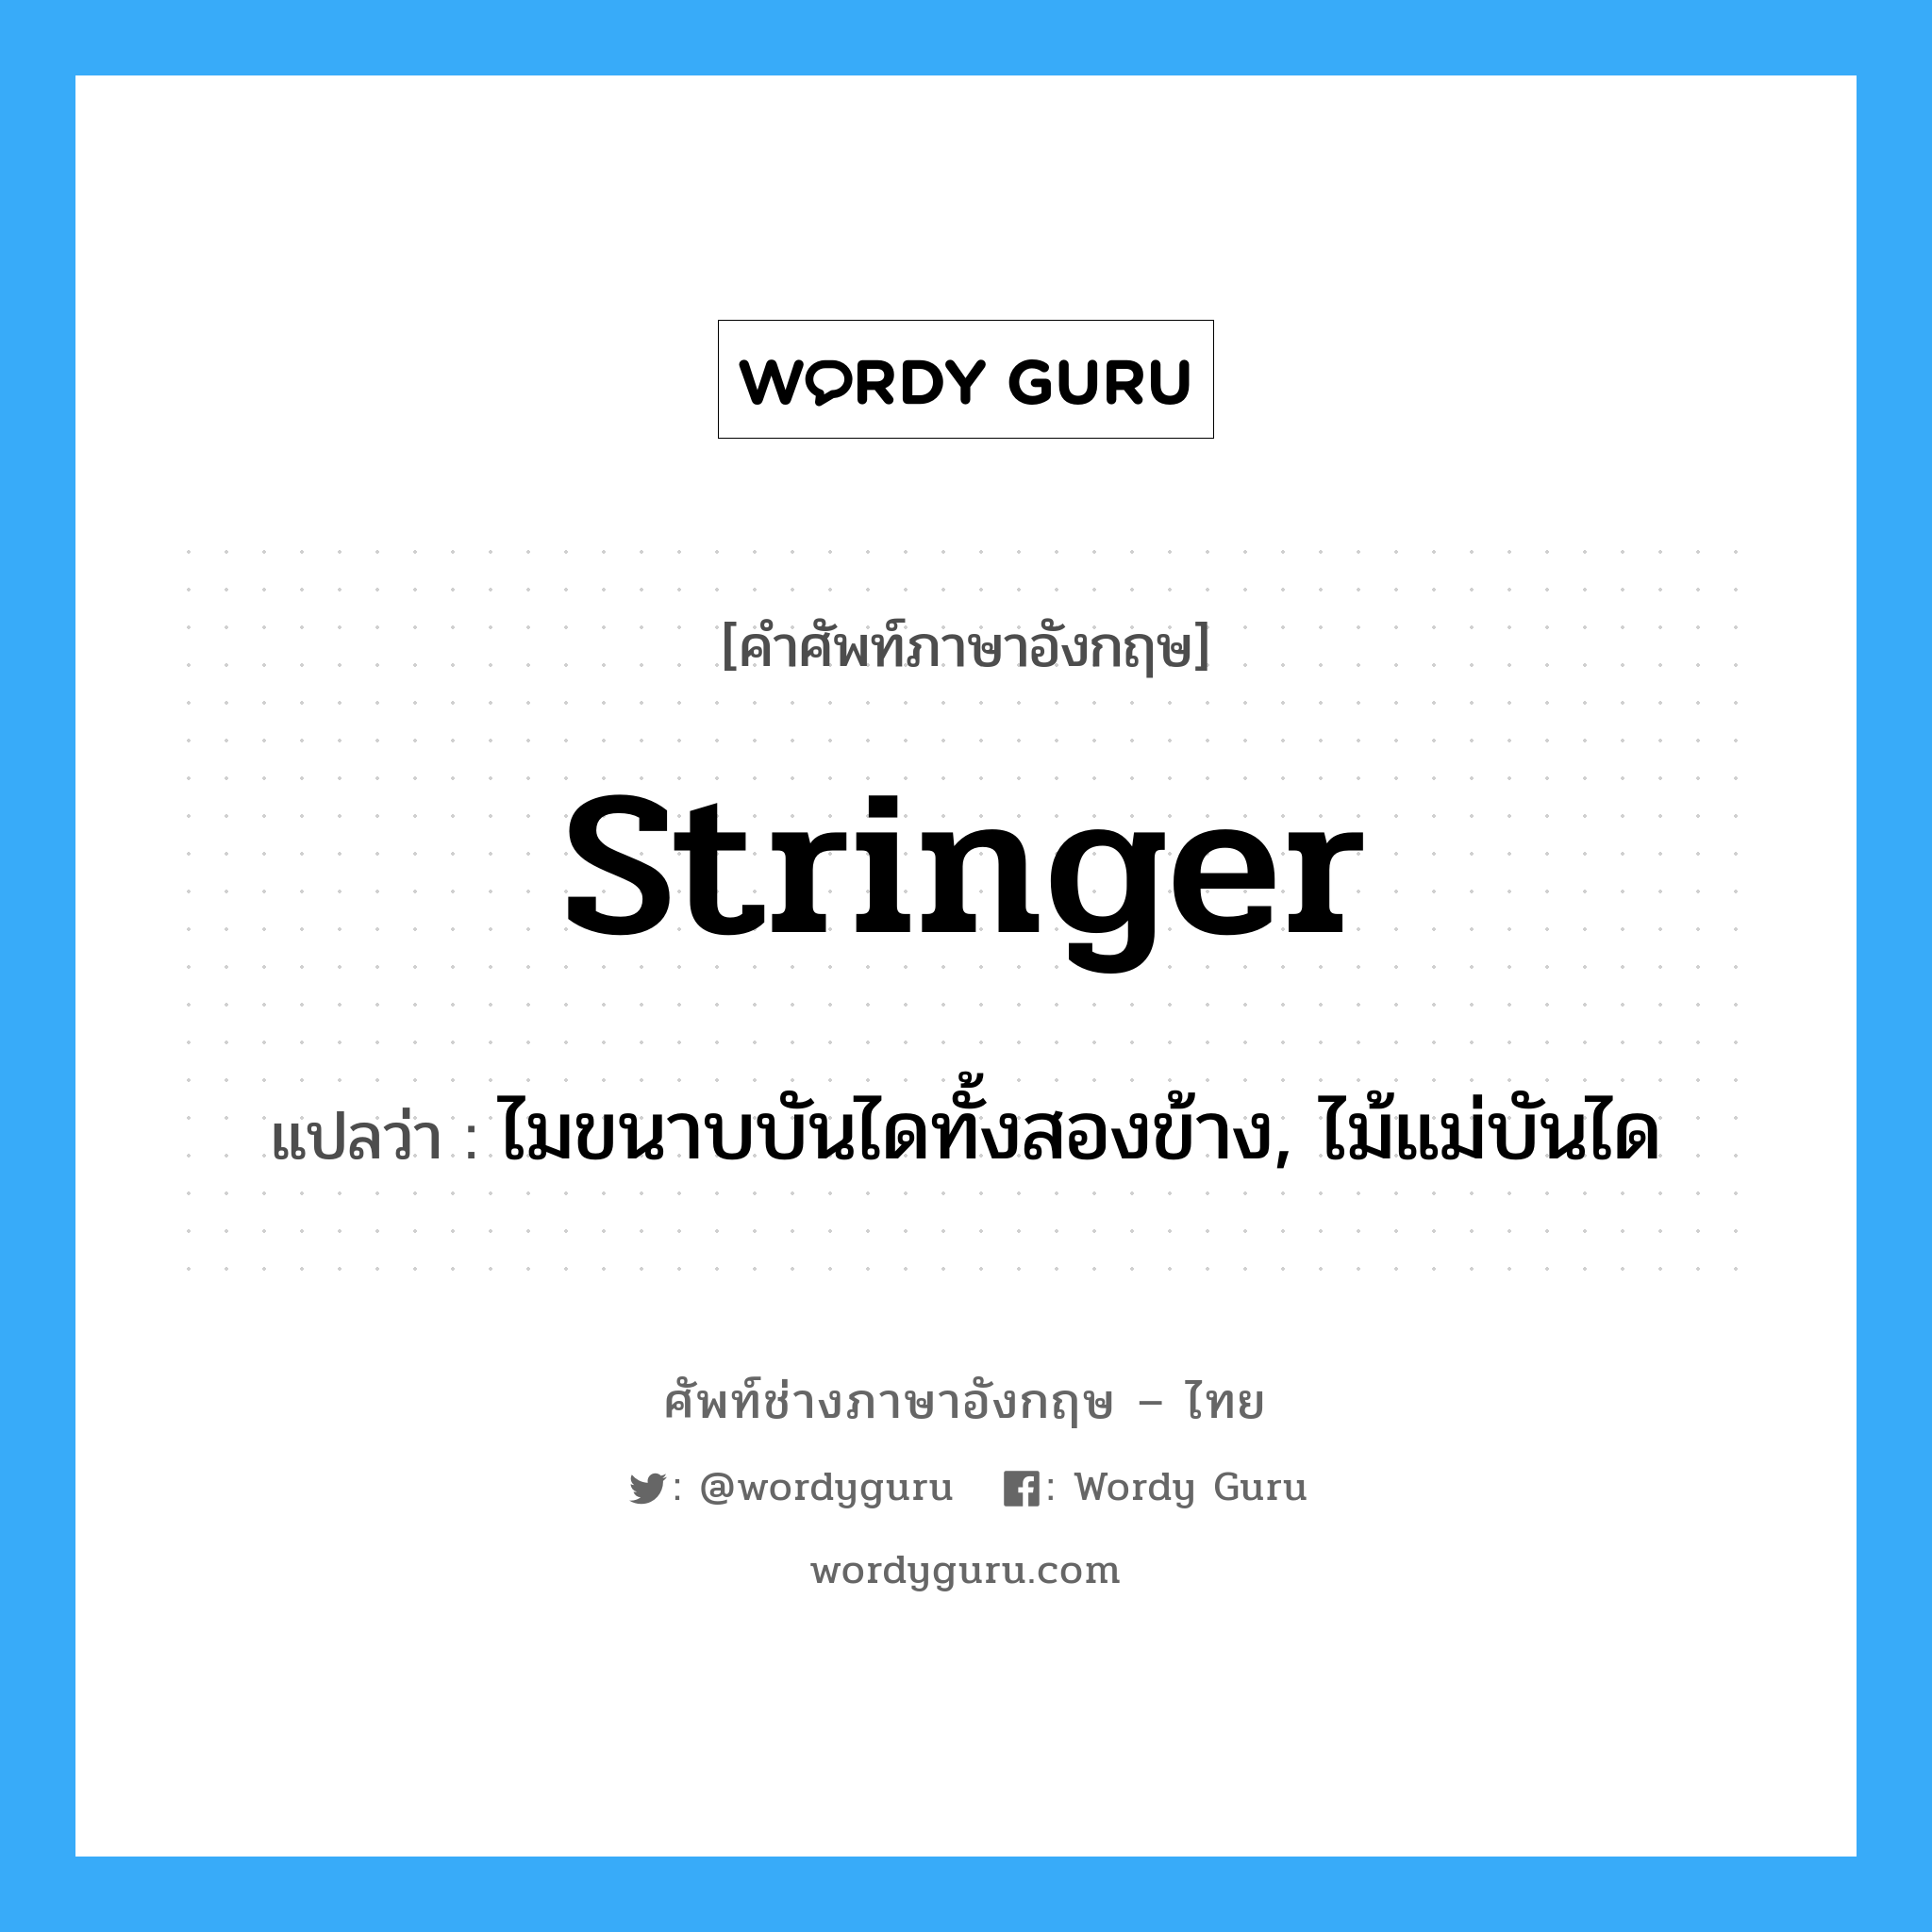 stringer แปลว่า?, คำศัพท์ช่างภาษาอังกฤษ - ไทย stringer คำศัพท์ภาษาอังกฤษ stringer แปลว่า ไมขนาบบันไดทั้งสองข้าง, ไม้แม่บันได